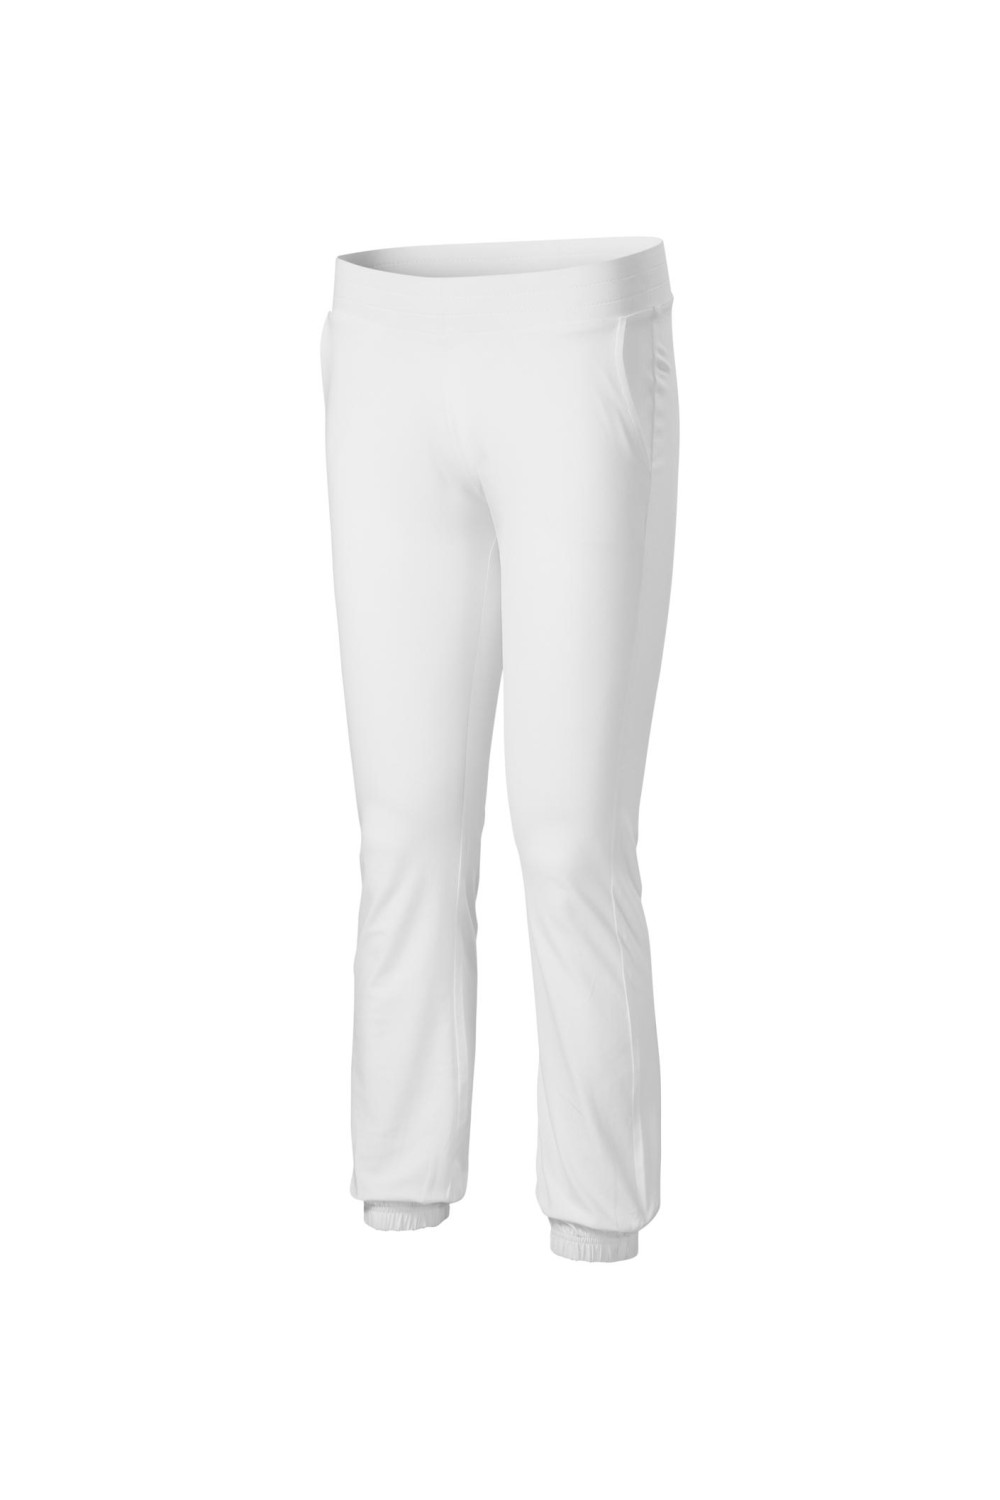 LEISURE 603 MALFINI ADLER Spodnie dresowe damskie biały